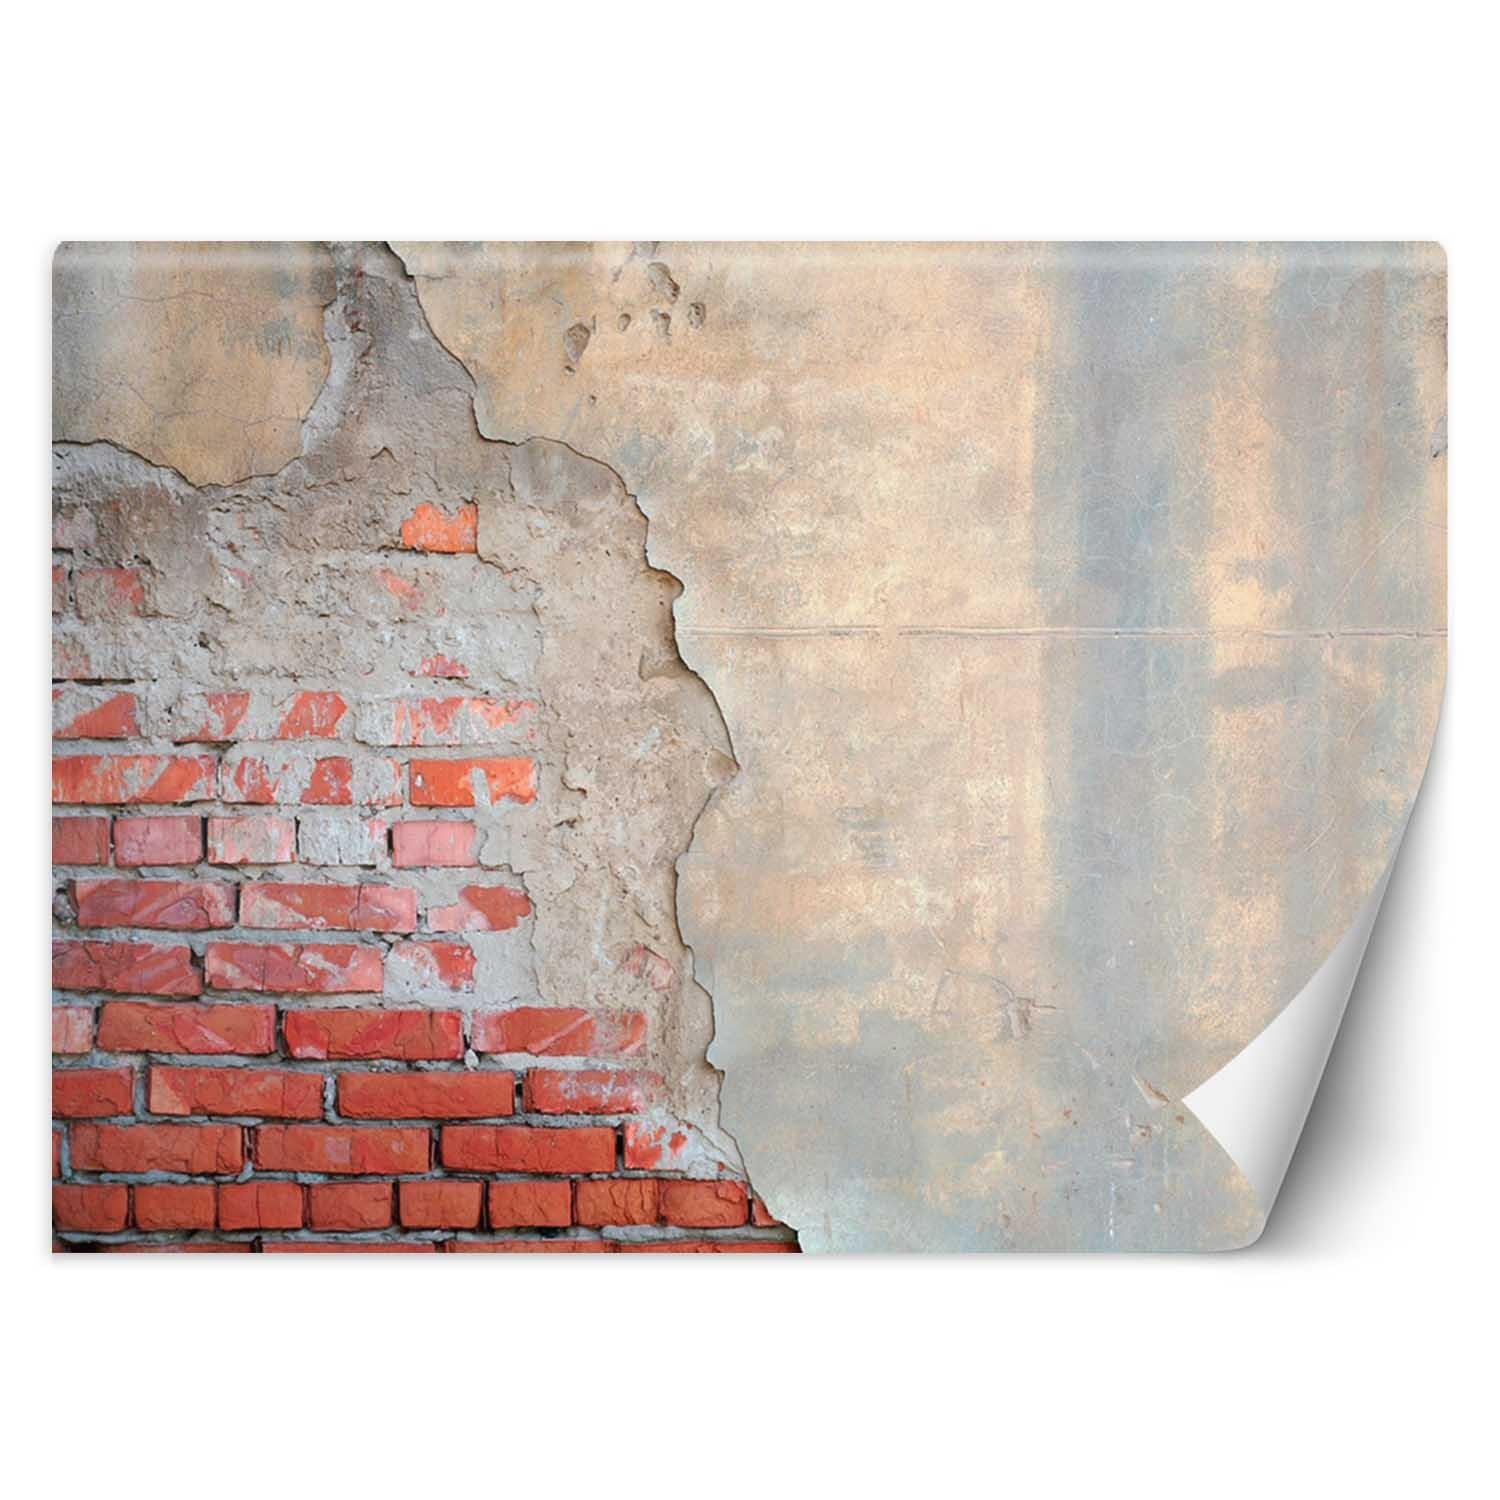 Trend24 – Behang – Bakstenen Muur – Vliesbehang – Behang Woonkamer – Fotobehang – 400x280x2 cm – Incl. behanglijm